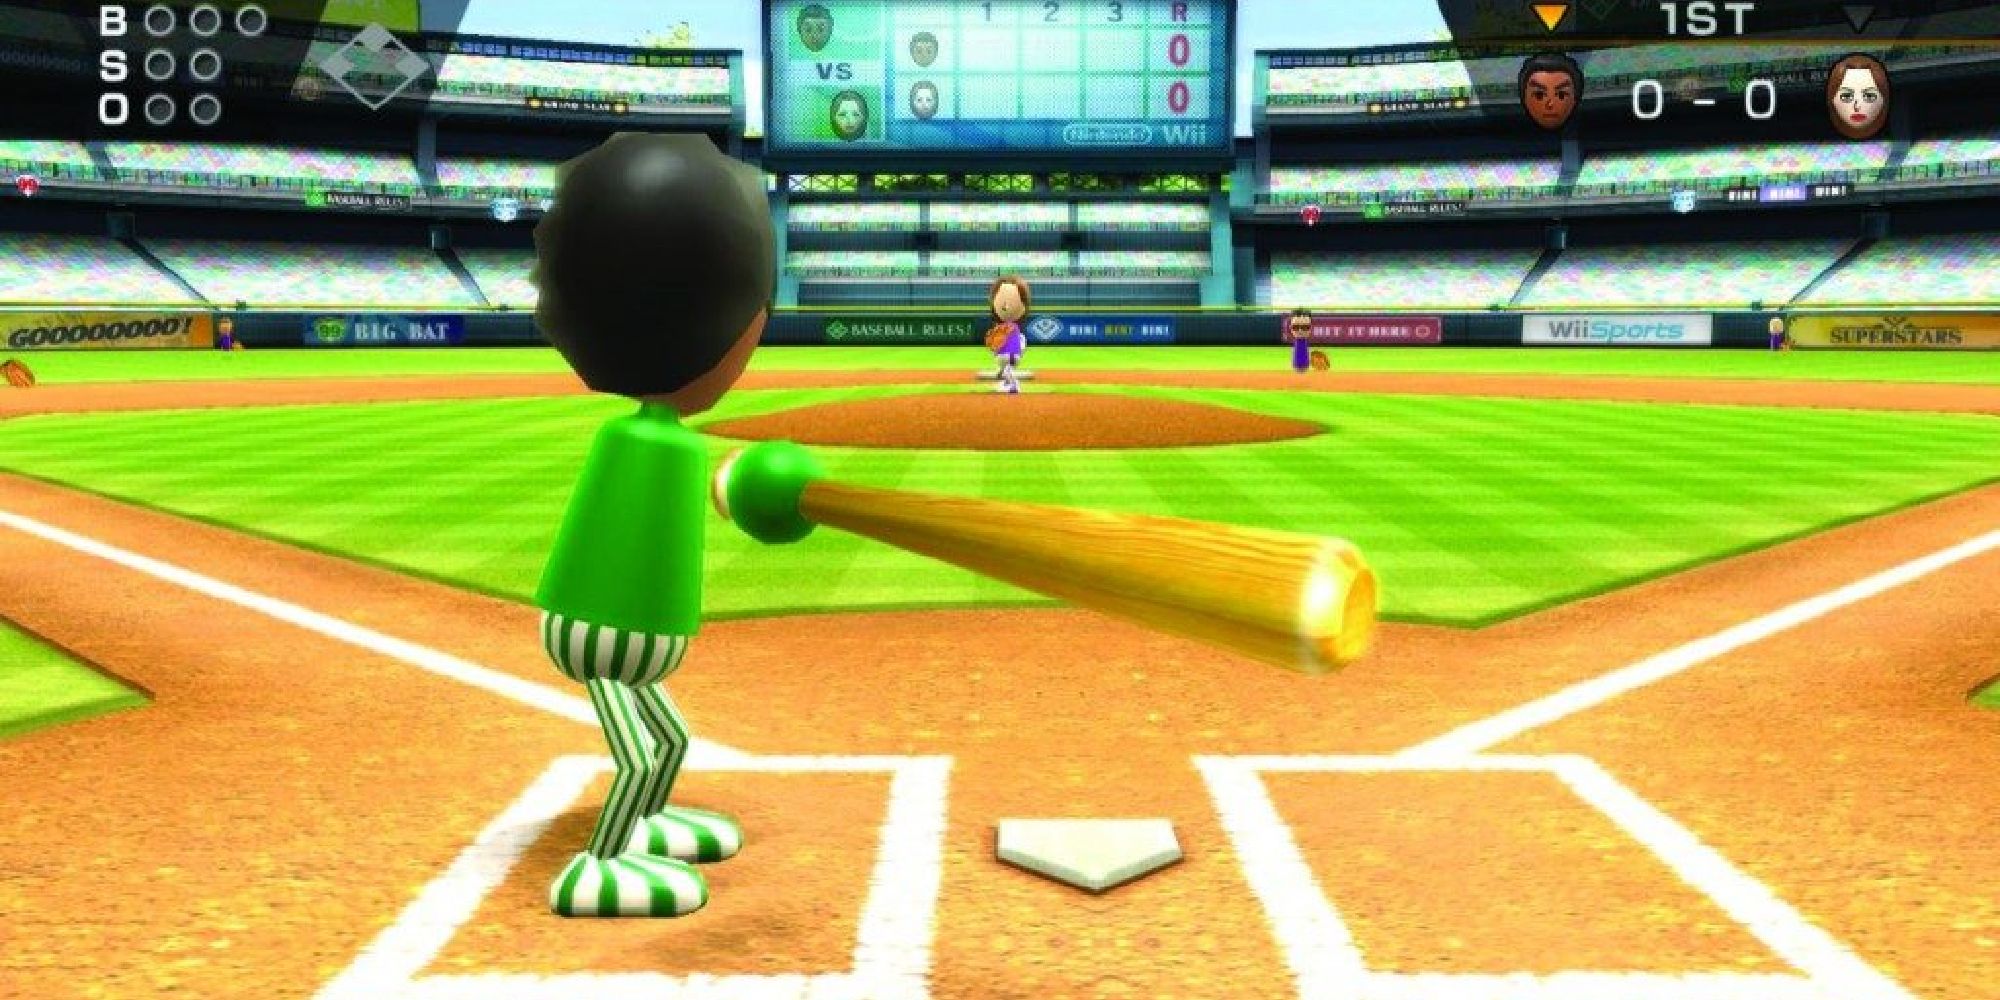 Mii в зеленой одежде играет на Wii Baseball в Wii Sports